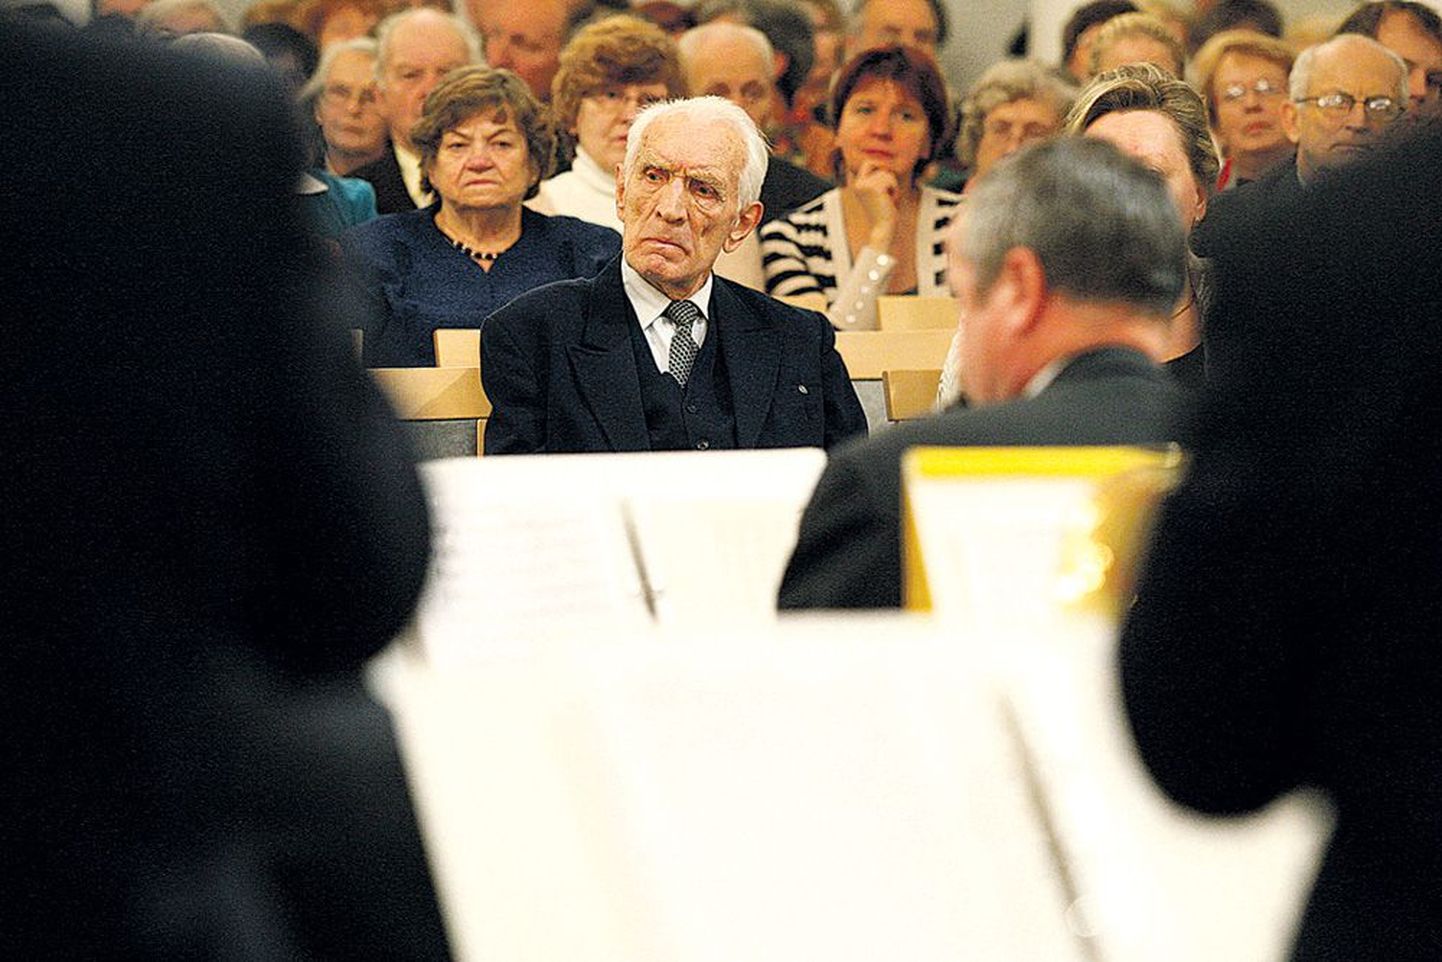 Muusikaõpetaja, orkestrimees ja koorijuht Alfred Bender (89) viibis ka ise Tartu Ülikooli aulas kuulajate hulgas.